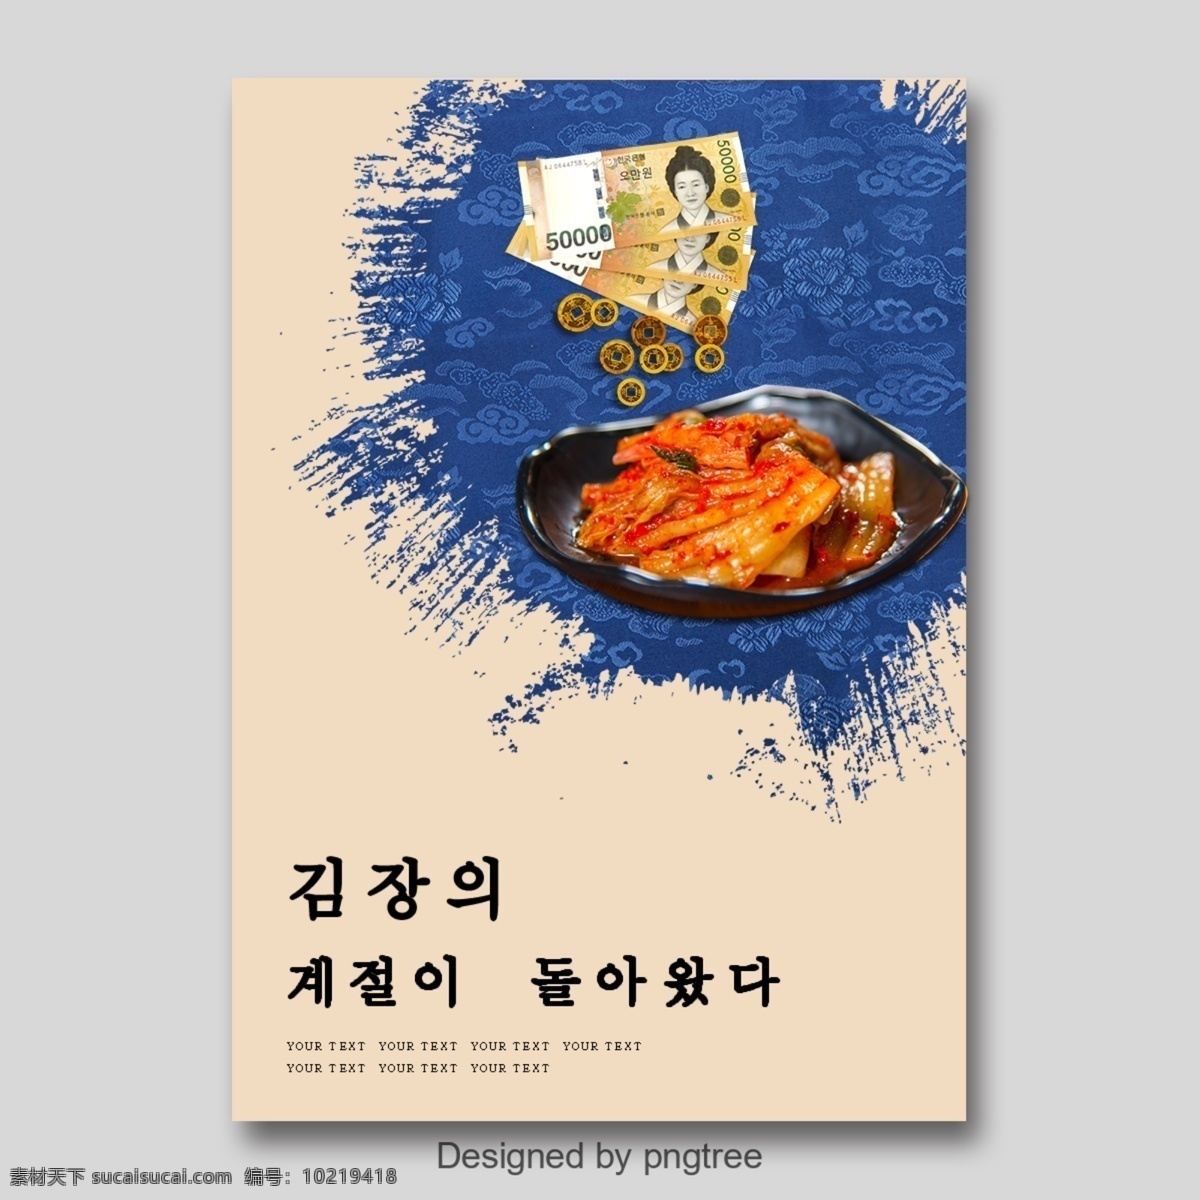 蓝色 现代 时尚 泡菜 假日 海报 极简主义 朝鲜的 泡菜节 节 盘子 带 团圆 梅花 钱 钱袋